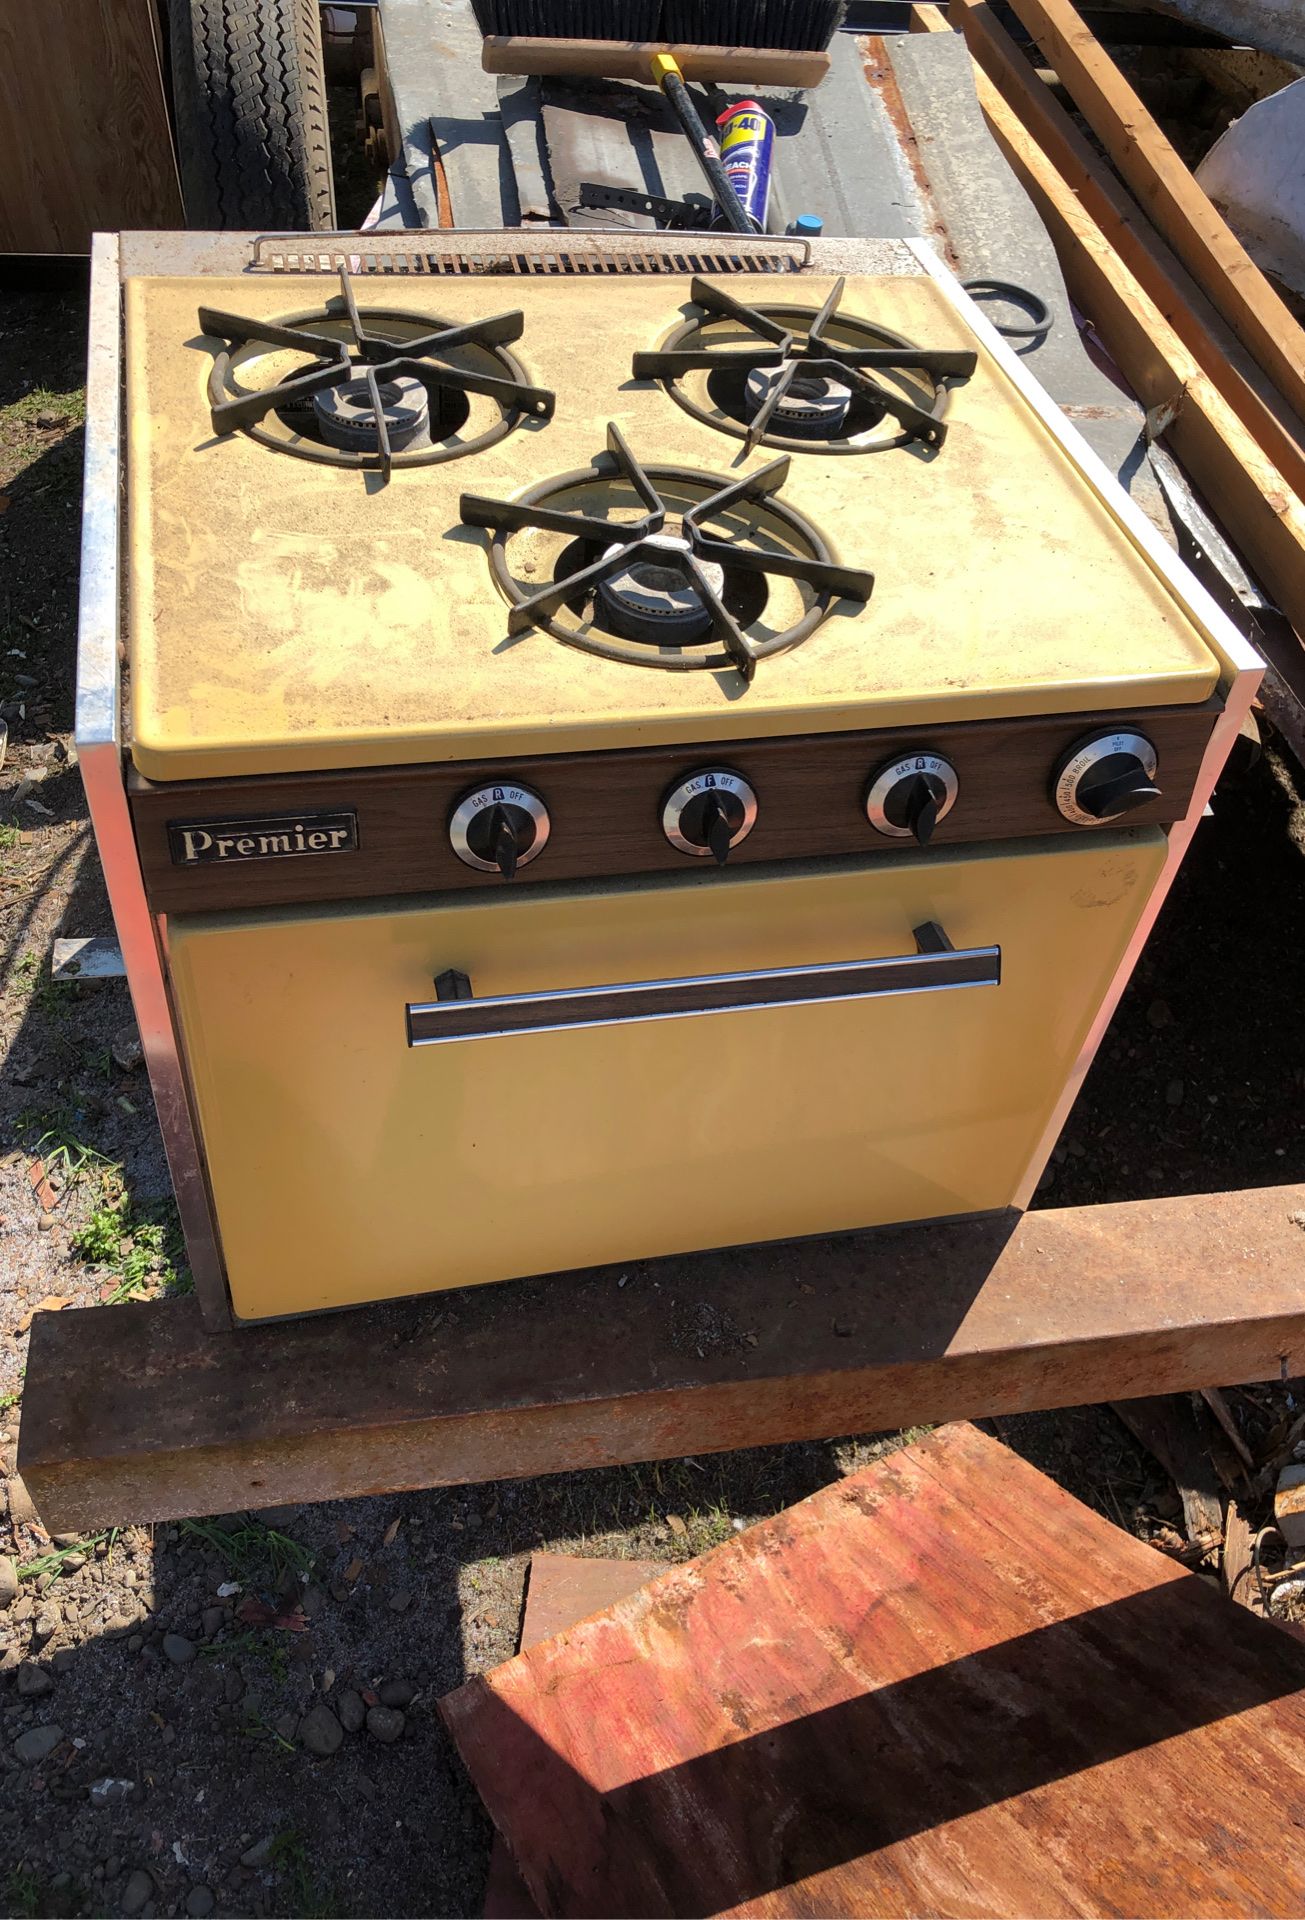 Premier camper stove